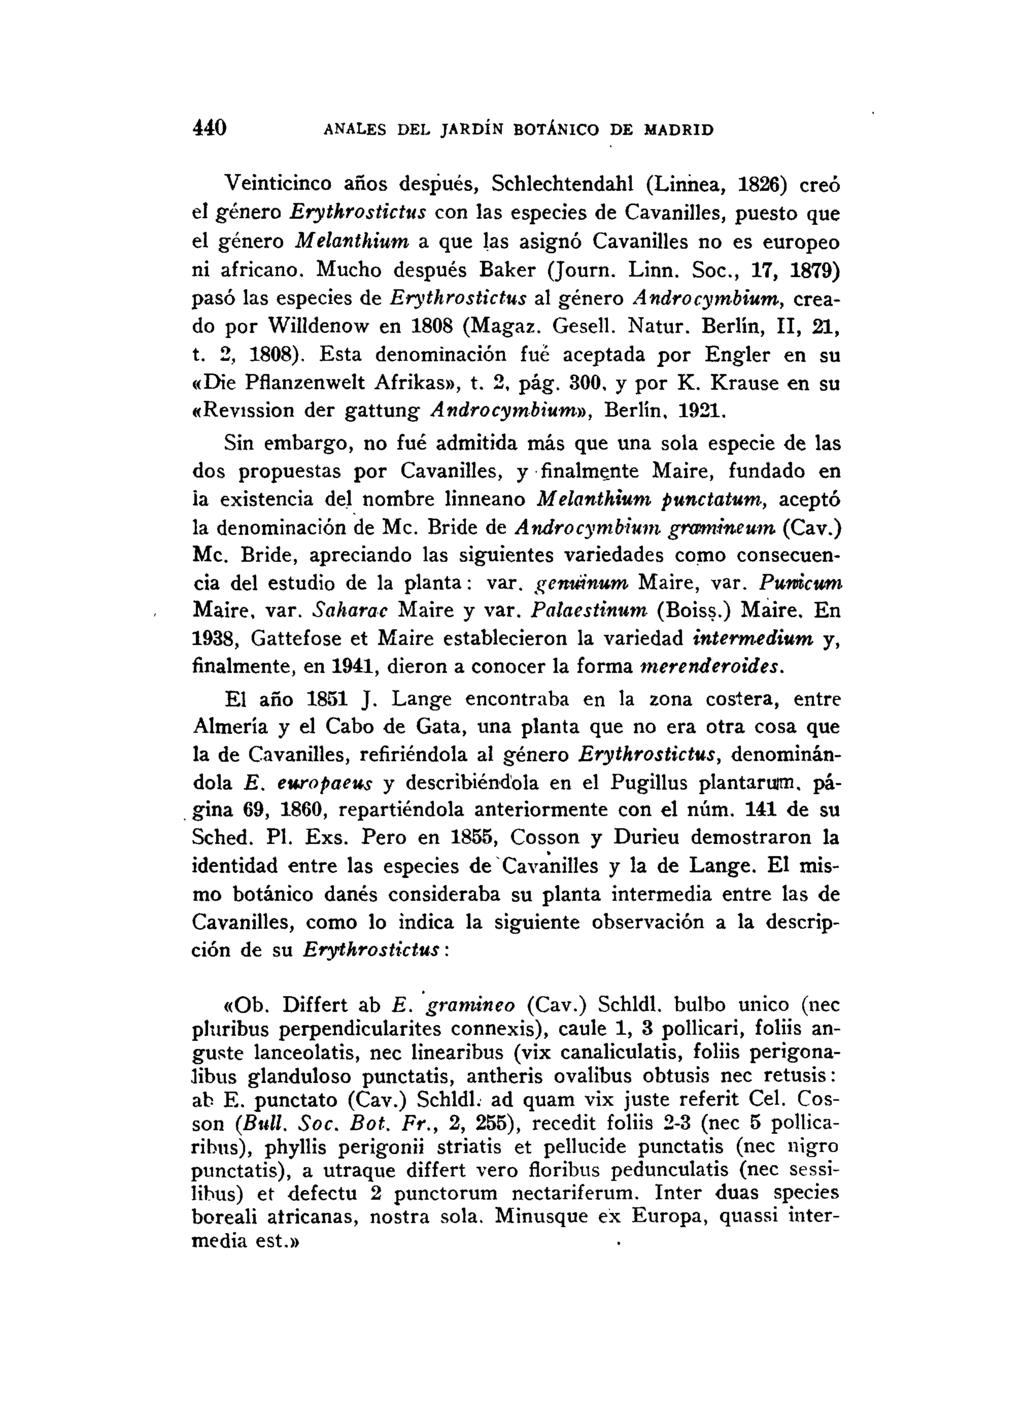 440 ANALES DEL JARDÍN BOTÁNICO DE MADRID Veinticinco años después, Schlechtendahl (Linnea, 1826) creó el género Erythrostictus con las especies de Cavanilles, puesto que el género Melanthium a que